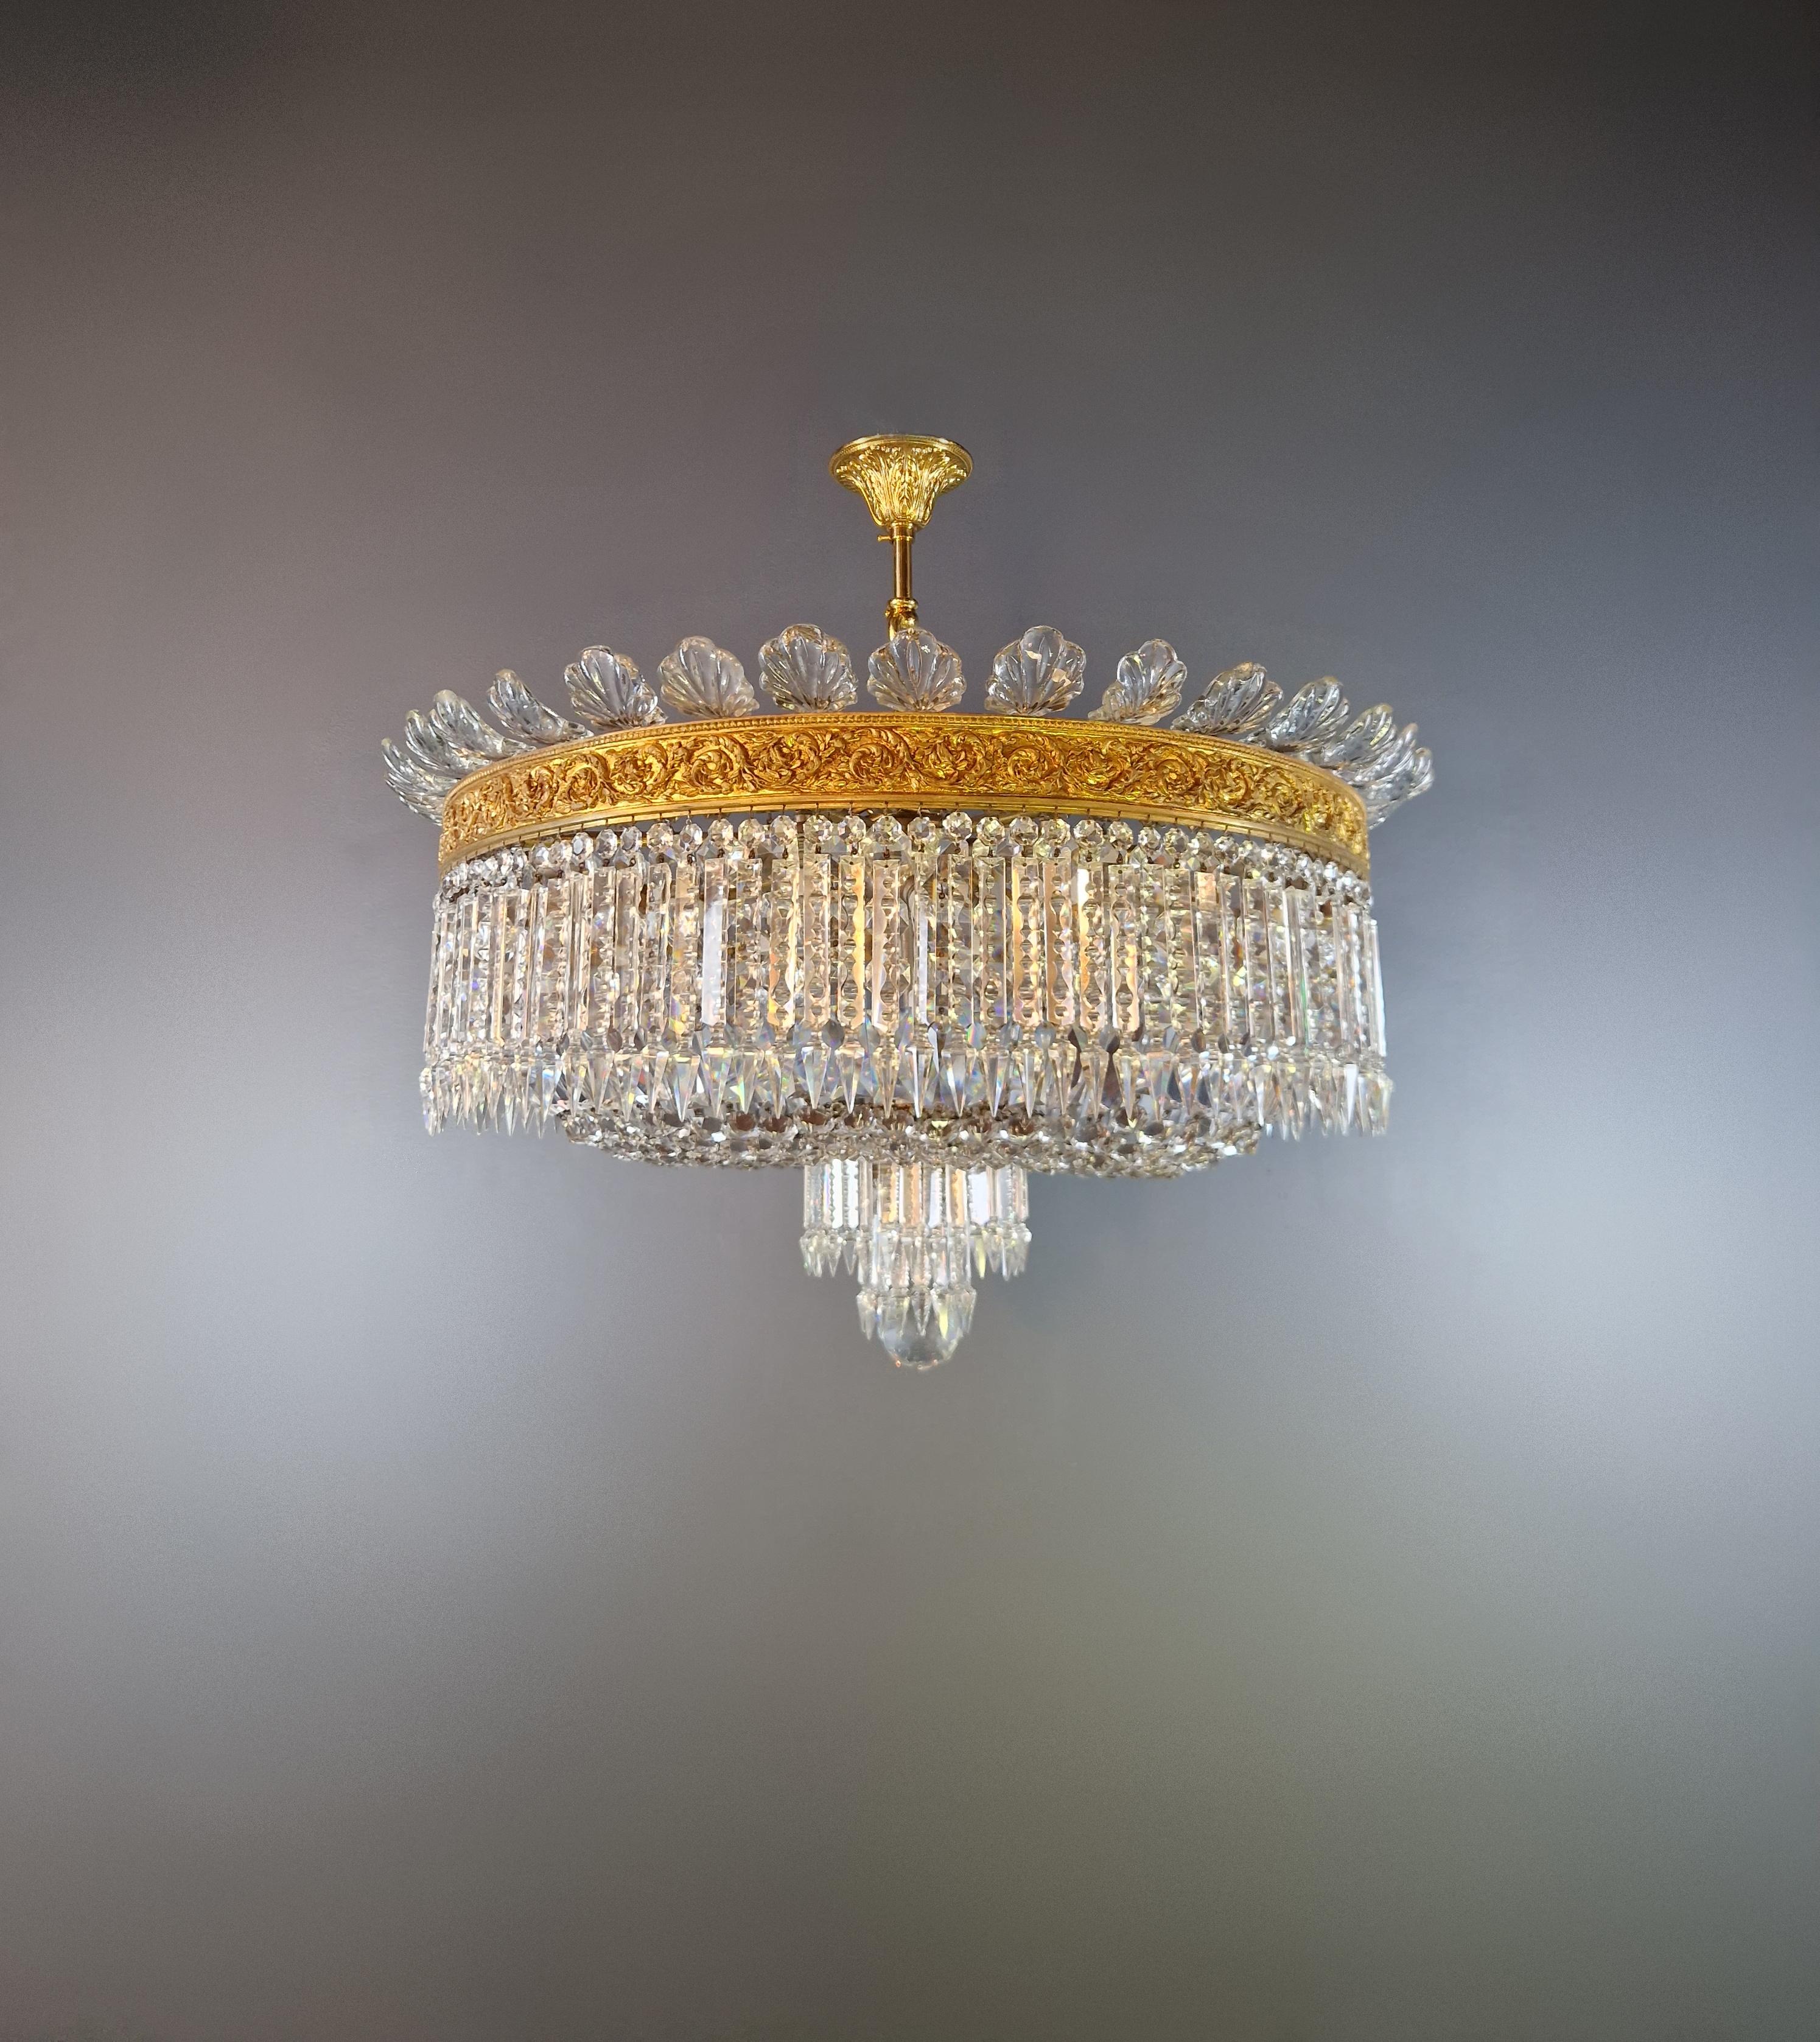 Empire Plafonnier Crystal Chandelier Brass Lustre Ceiling Antique Art Nouveau For Sale